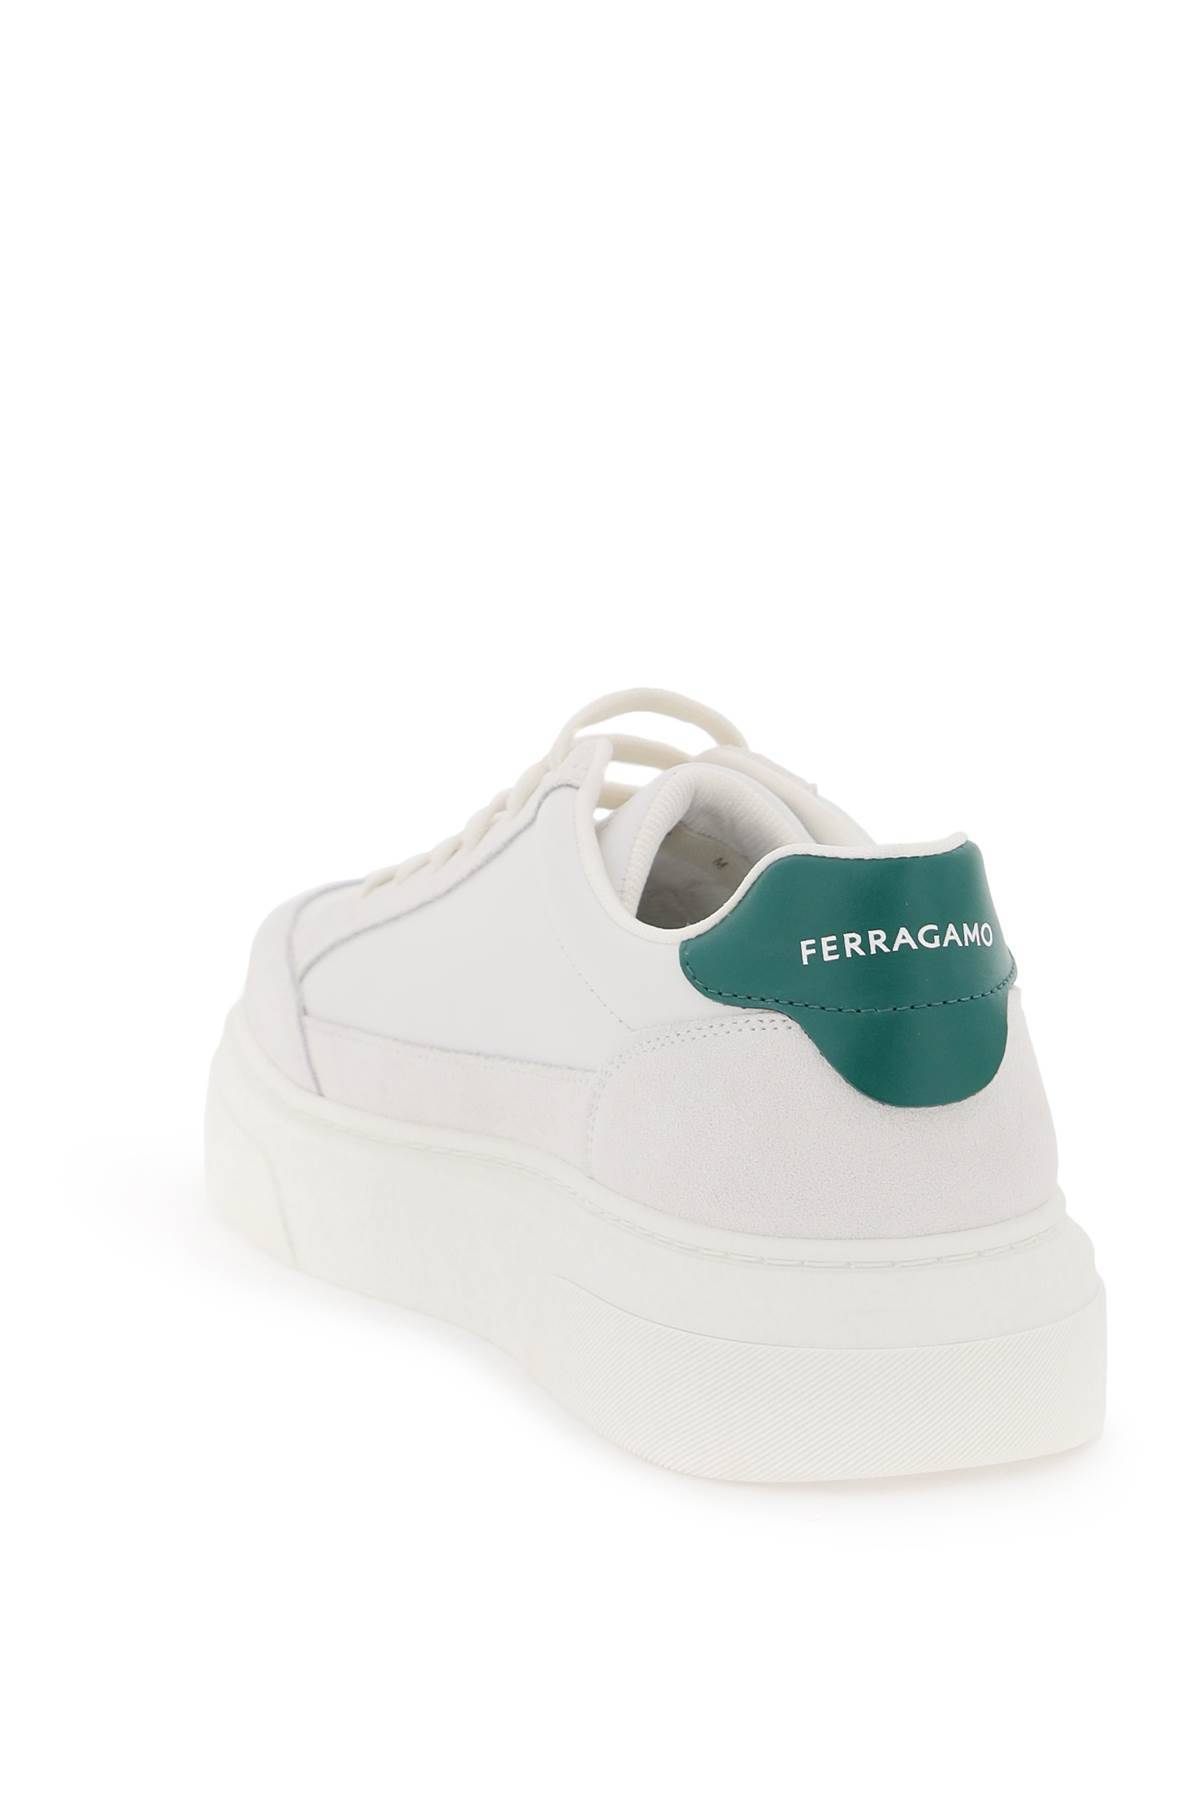 Shop Ferragamo Gancini Low-top Sneakers In White,green